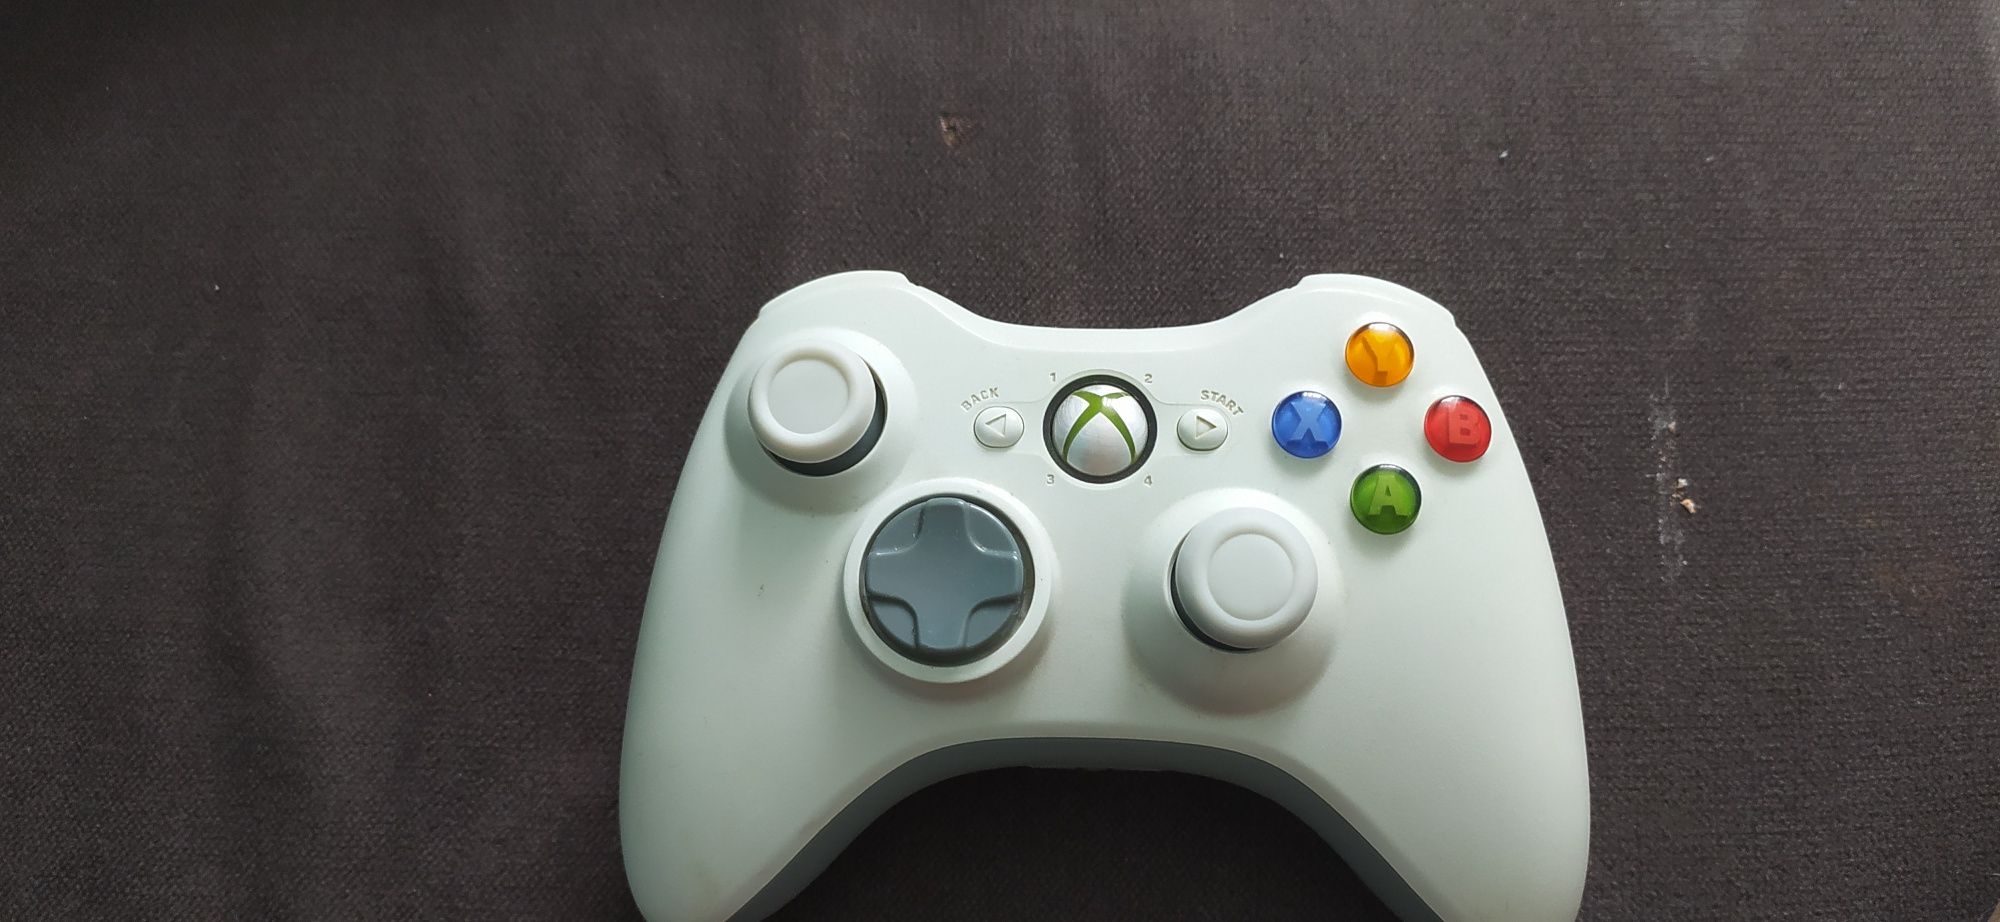 Kontroler gry do Xboxa 360